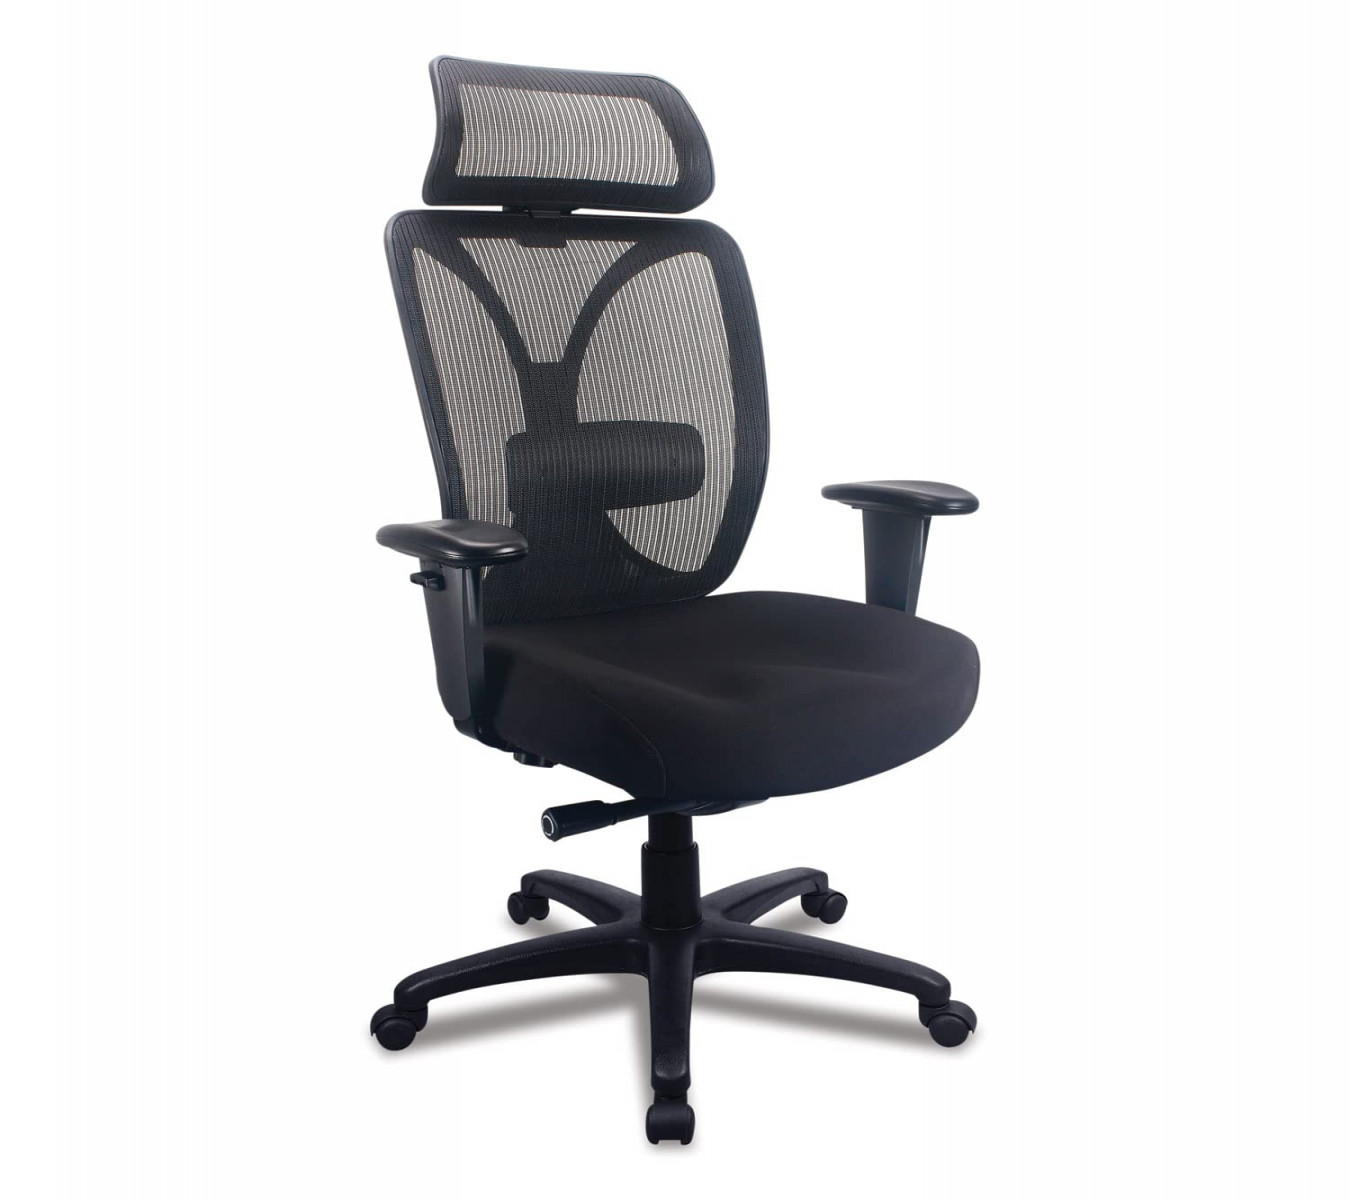 Tempurpedic Office Chair